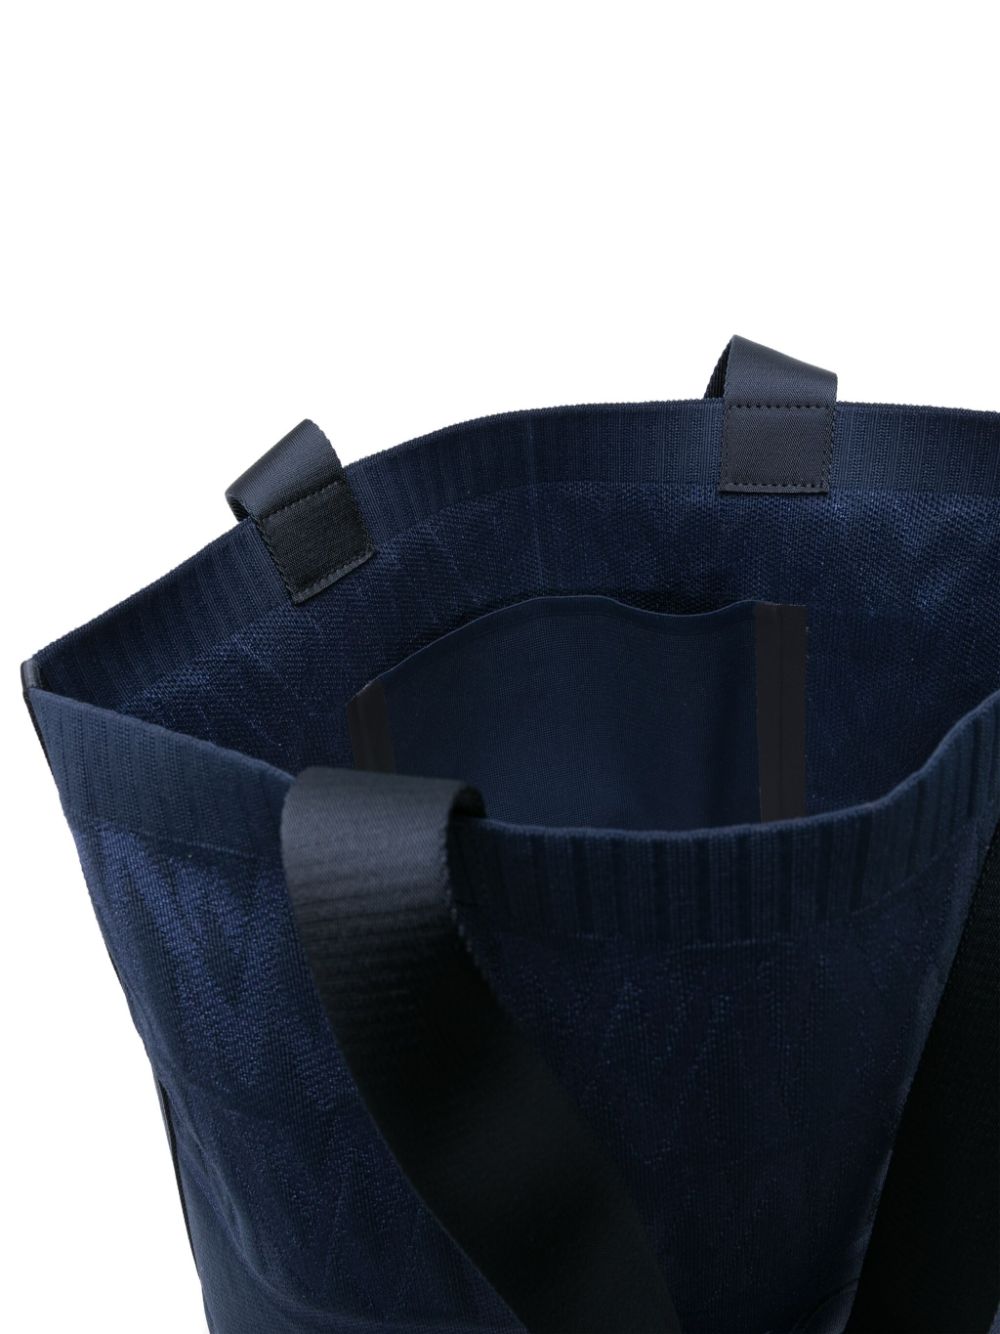 'Tote Bag Knit' bag